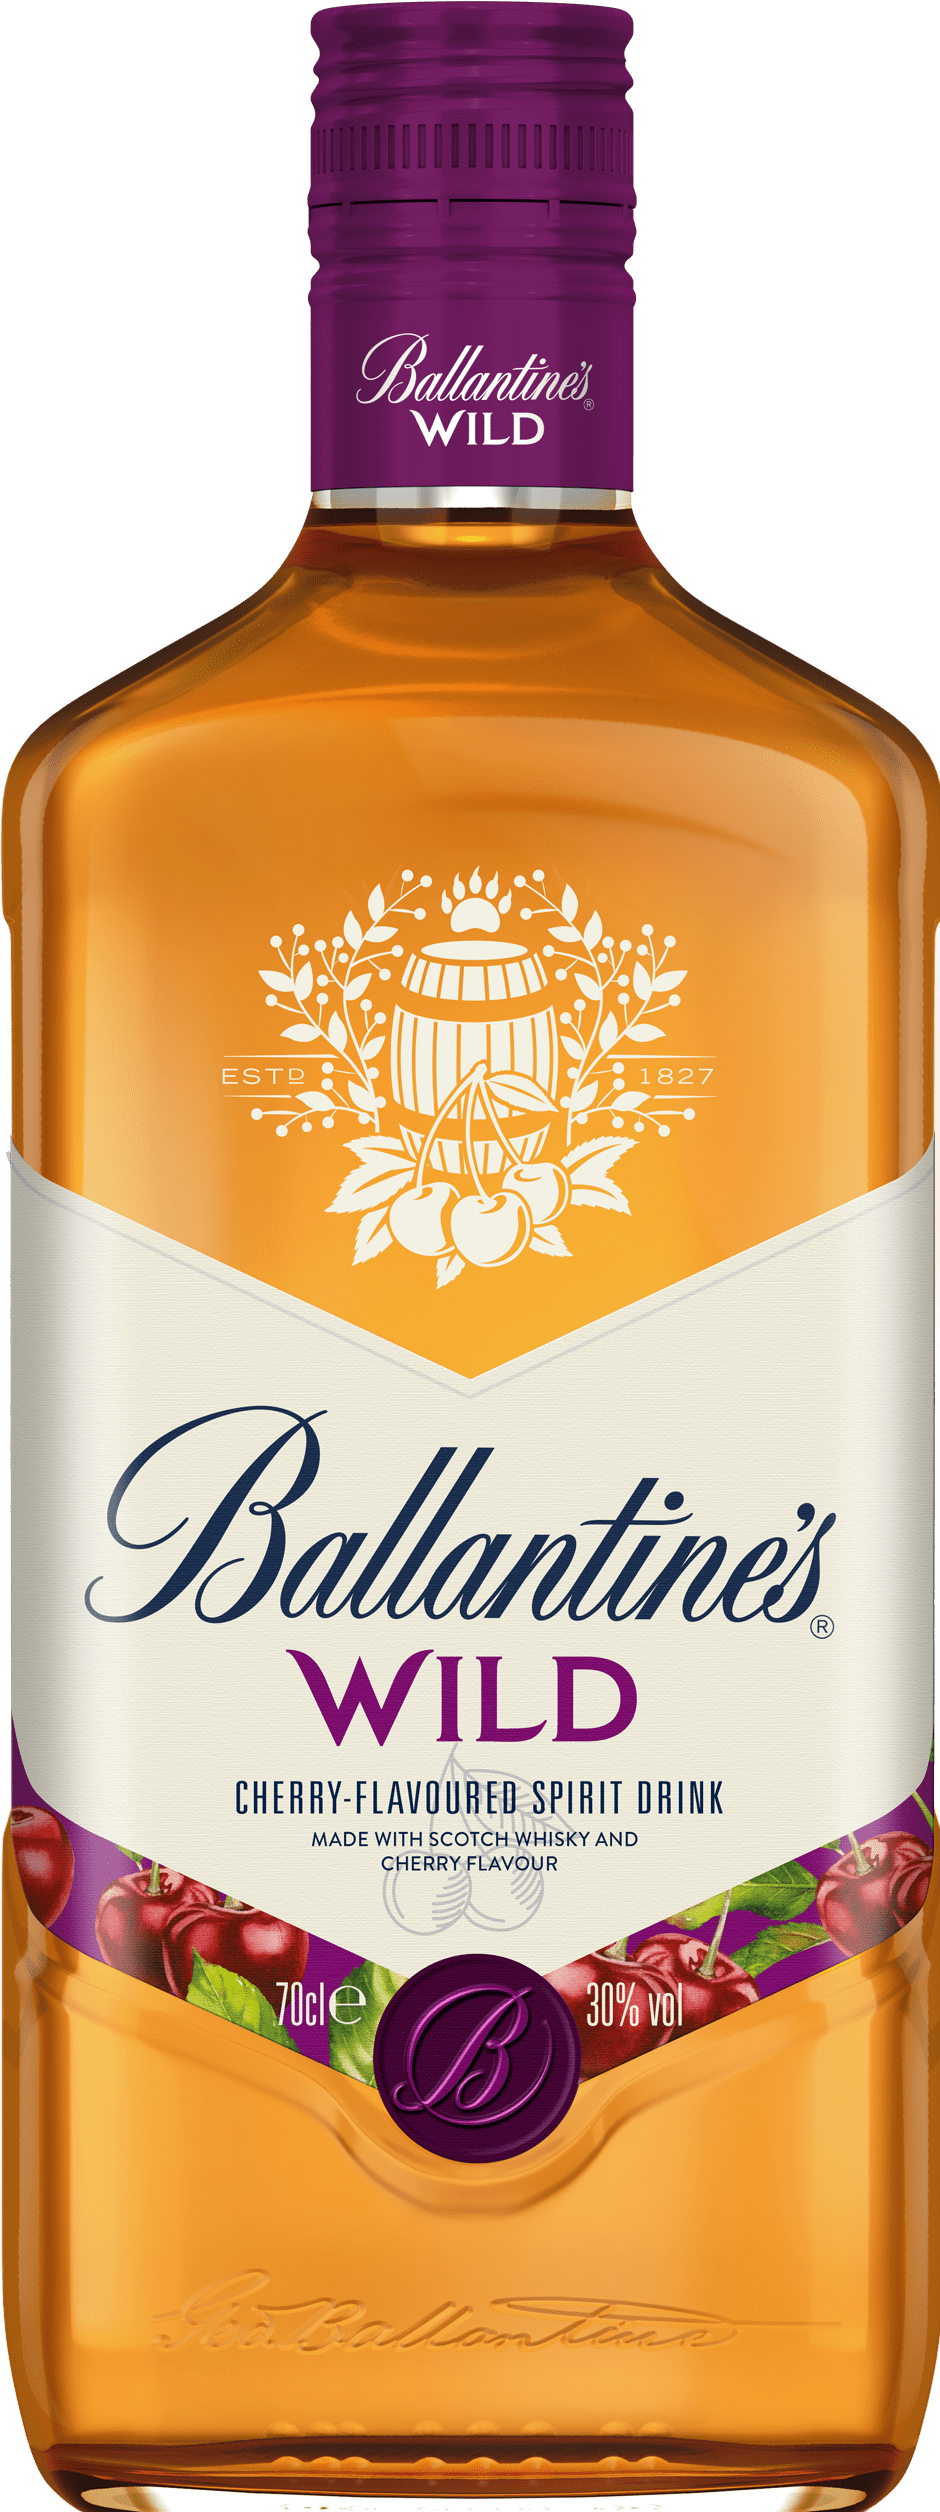 BUY] Ballantine's Wild Spirit Drink Scotch